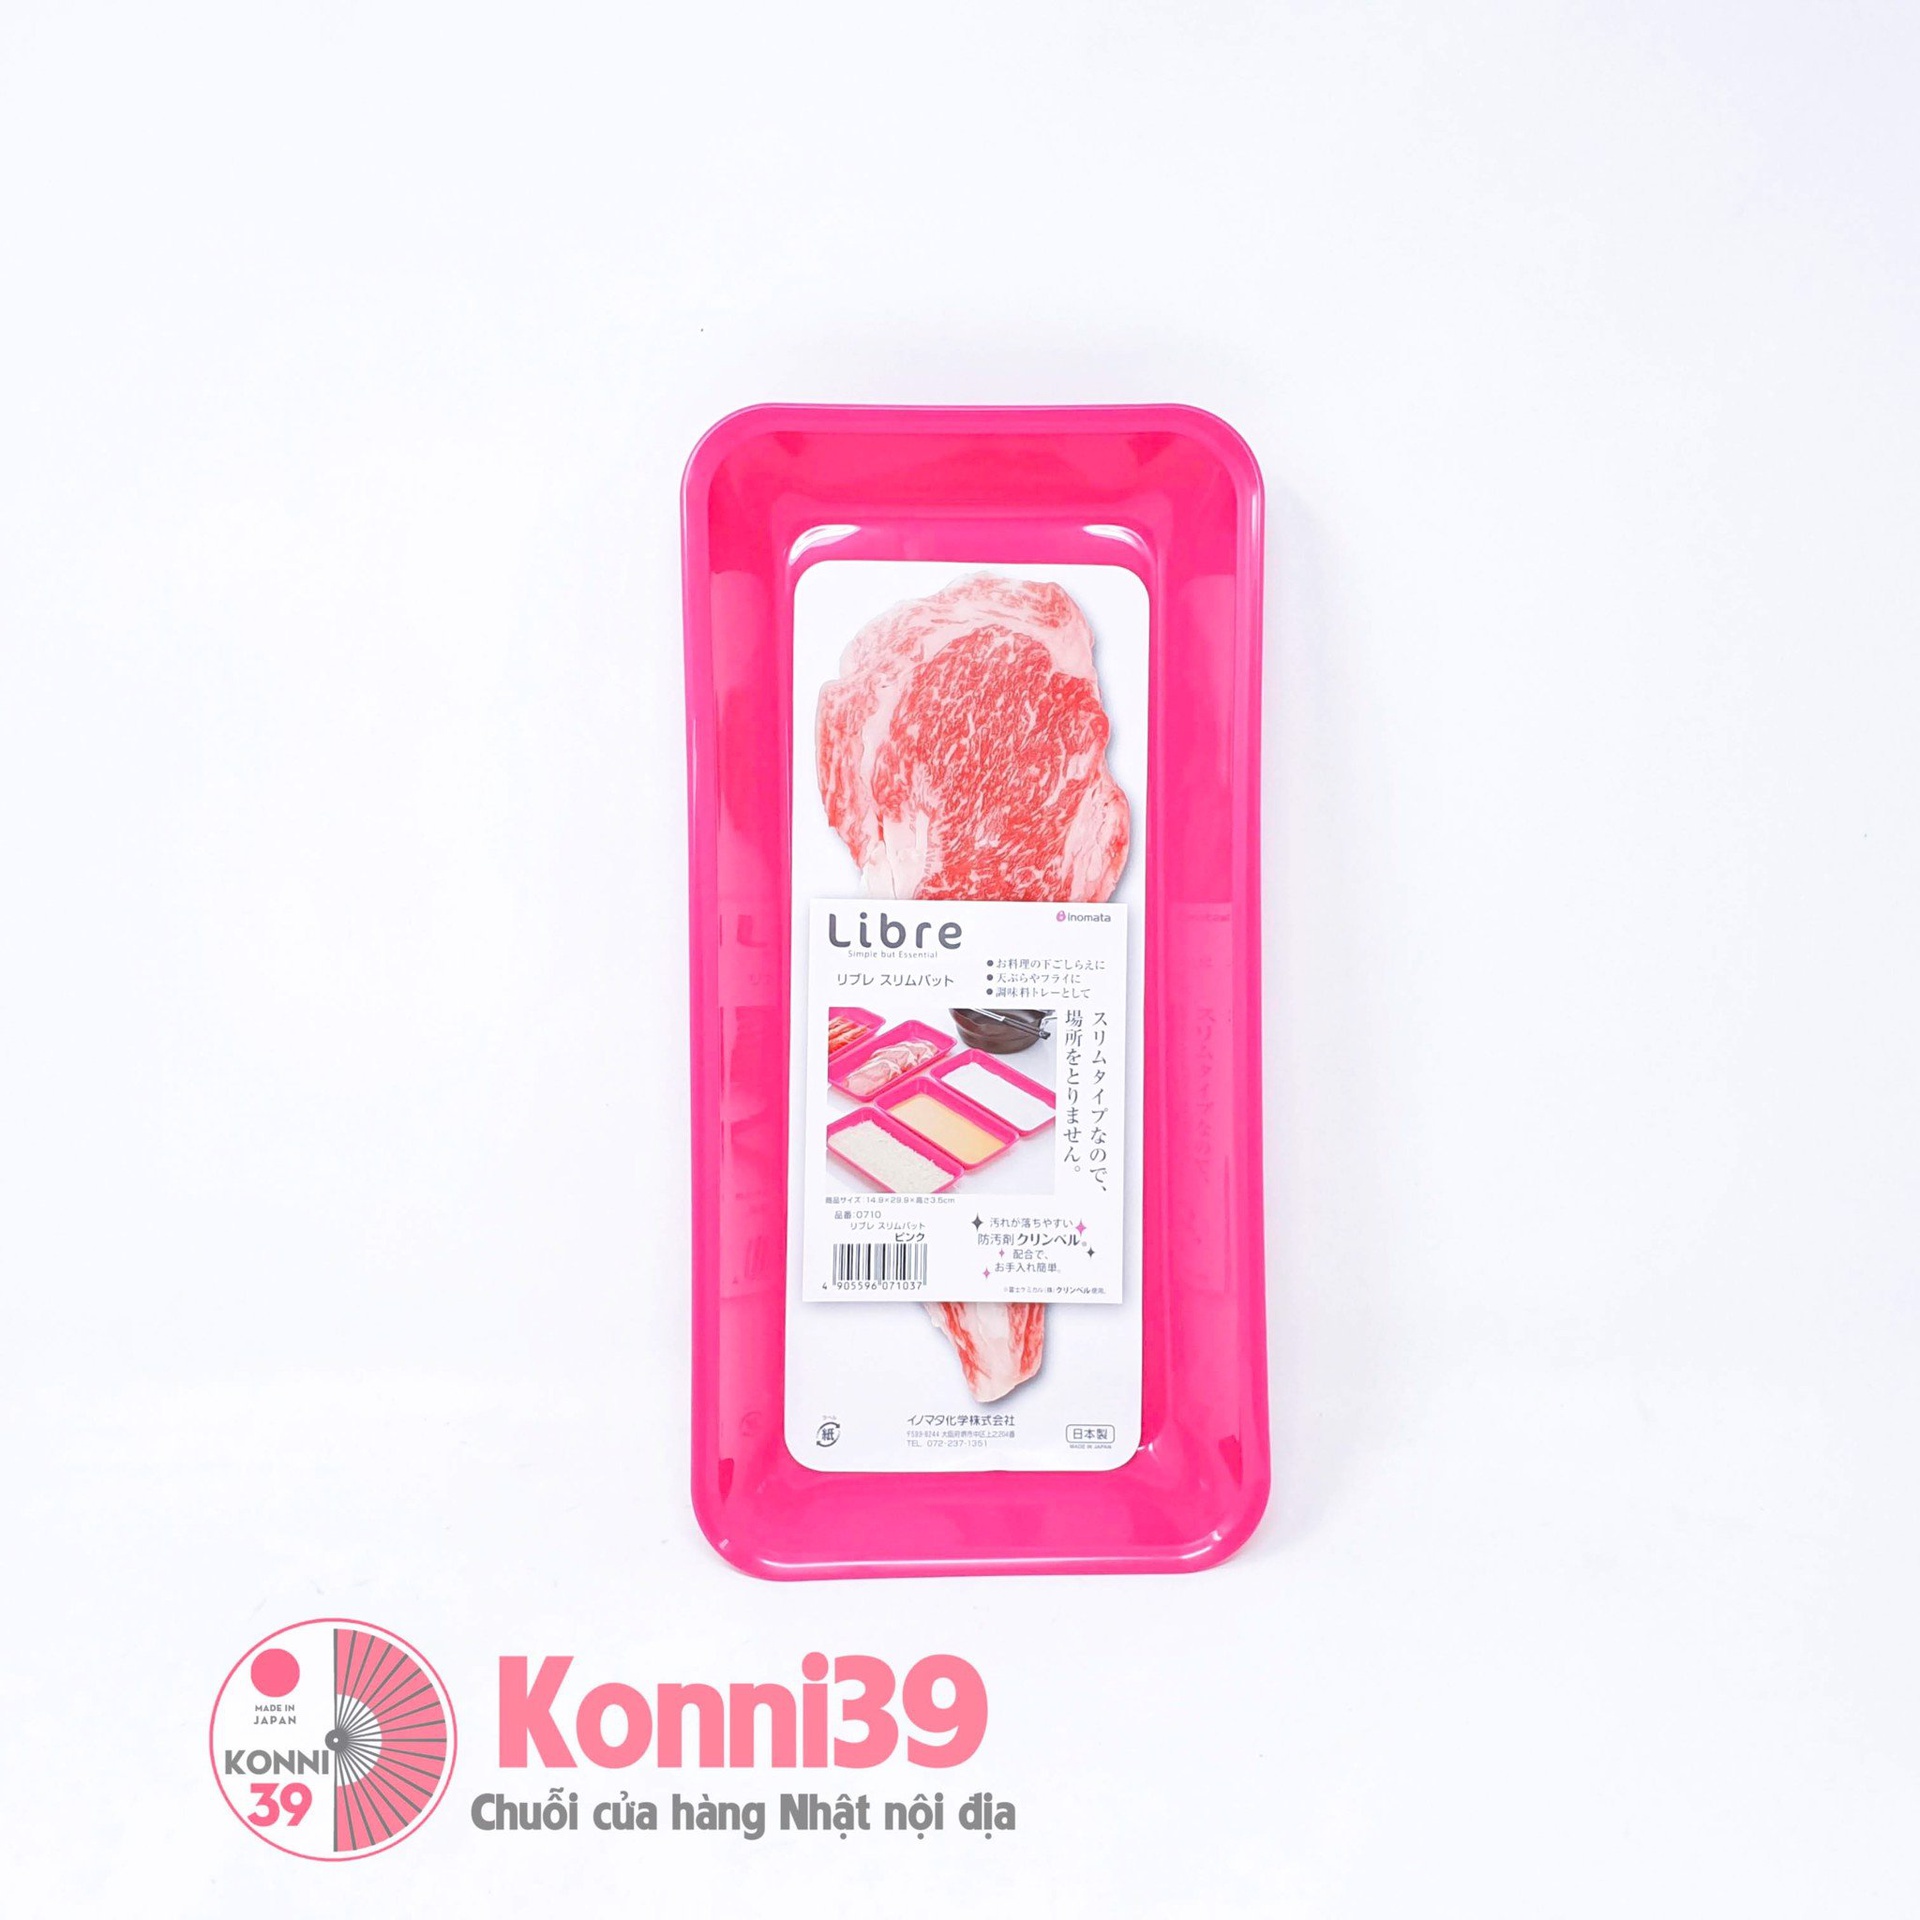 Khay nhựa đa năng Libre màu hồng 29.9 x 14.9 x 3.5cm